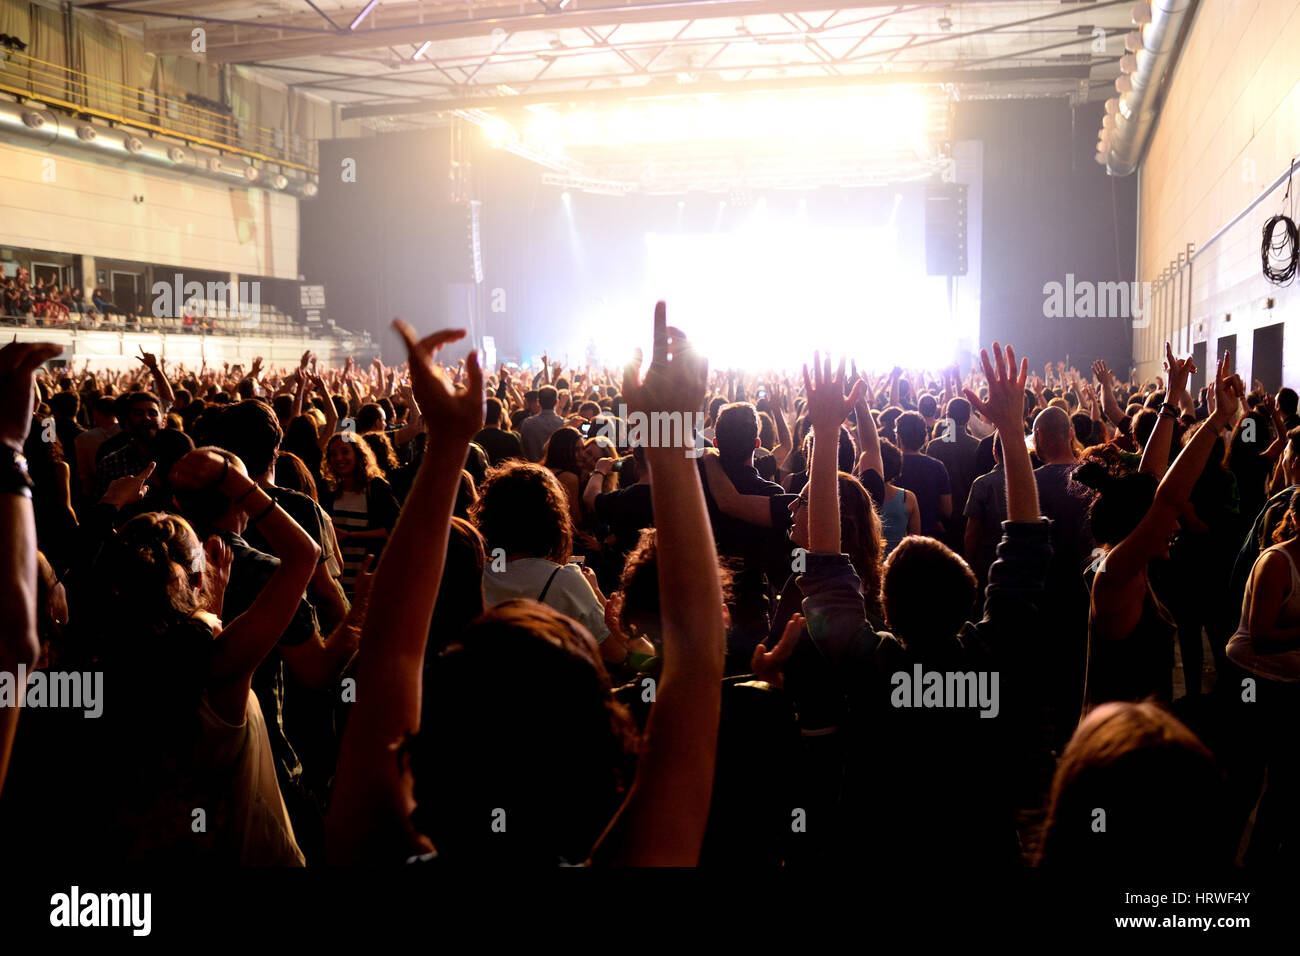 Barcelone - APR 24 : foule lors d'un concert au stade Sant Jordi Club le 24 avril 2015 à Barcelone, Espagne. Banque D'Images